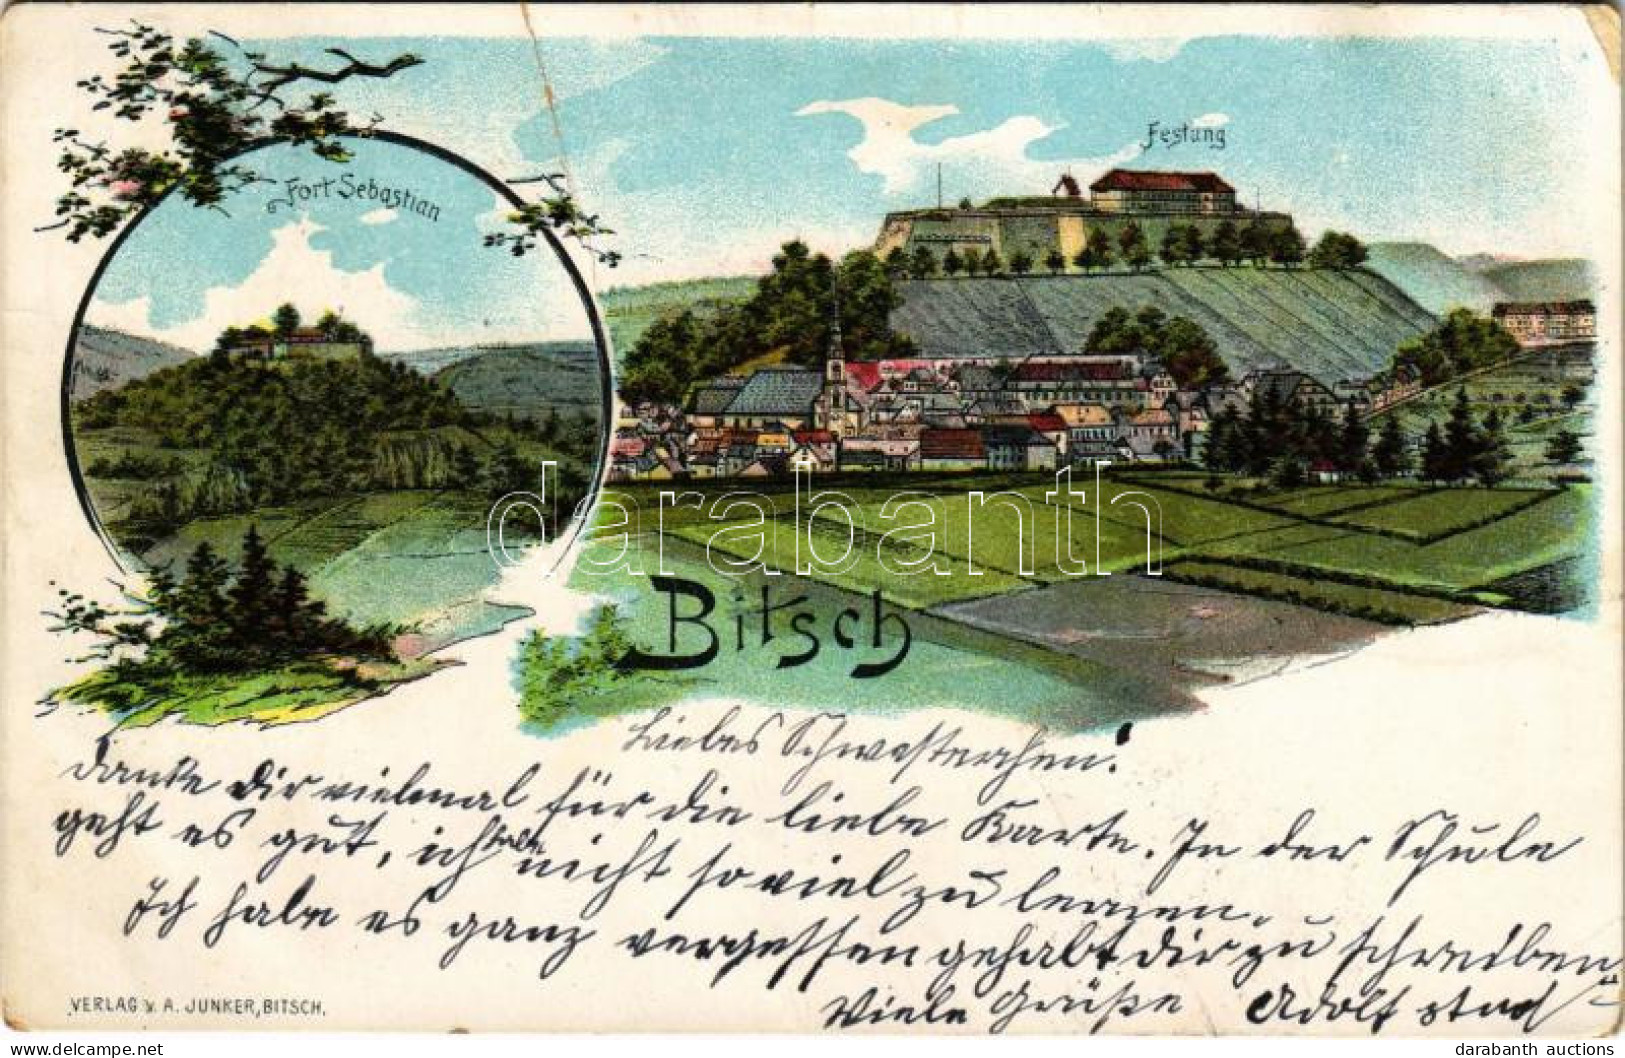 T3/T4 1906 Bitsch, Fort Sebastian, Festung / Fortress, Citadel. Verlag V. A. Junker Art Nouveau Litho (fa) - Non Classificati